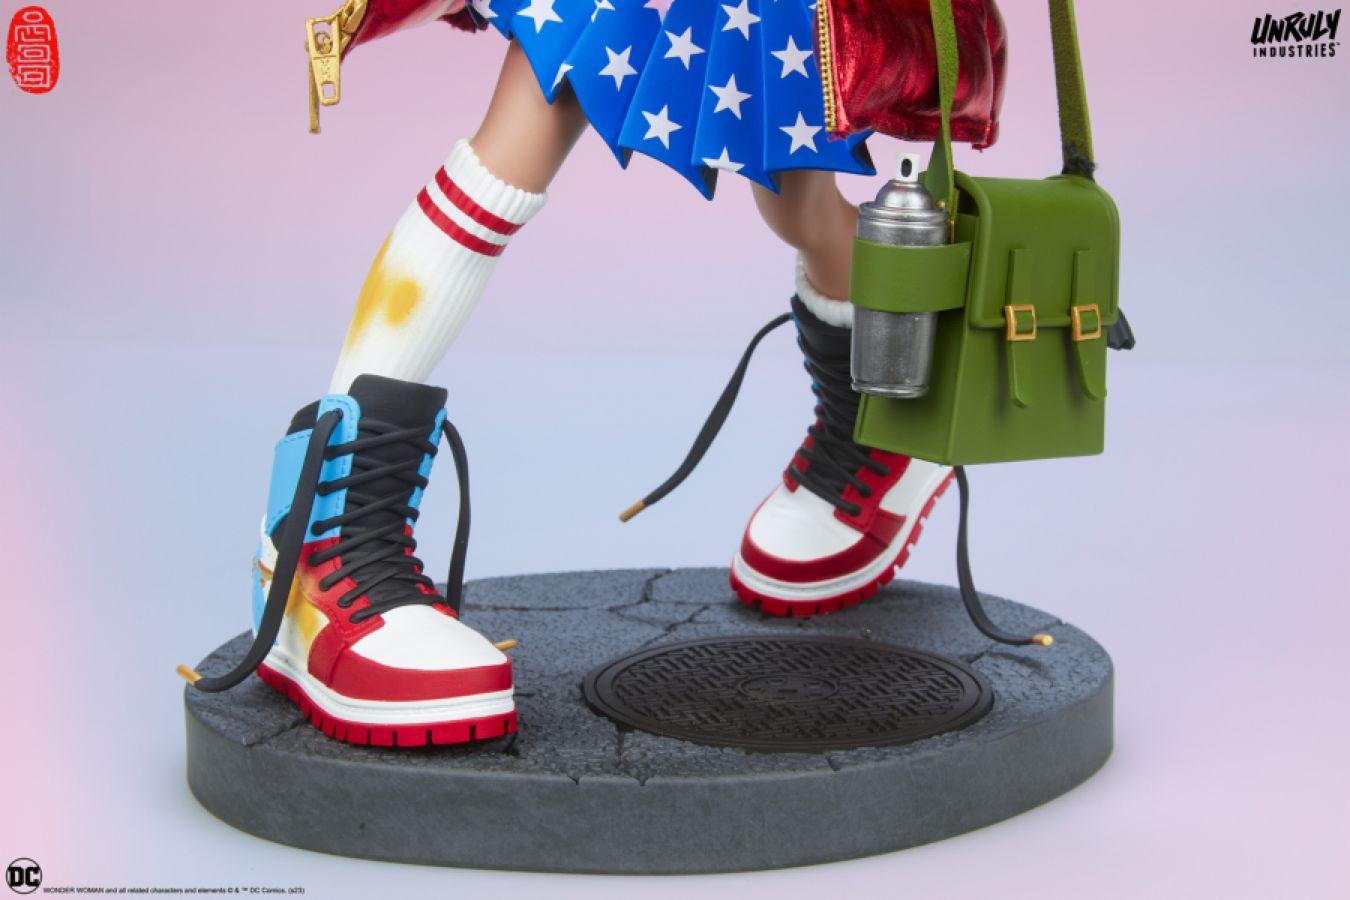 UNR700197 DC Comics - Hype Girl (Wonder Woman) Designer Statue - Unruly Industries - Titan Pop Culture